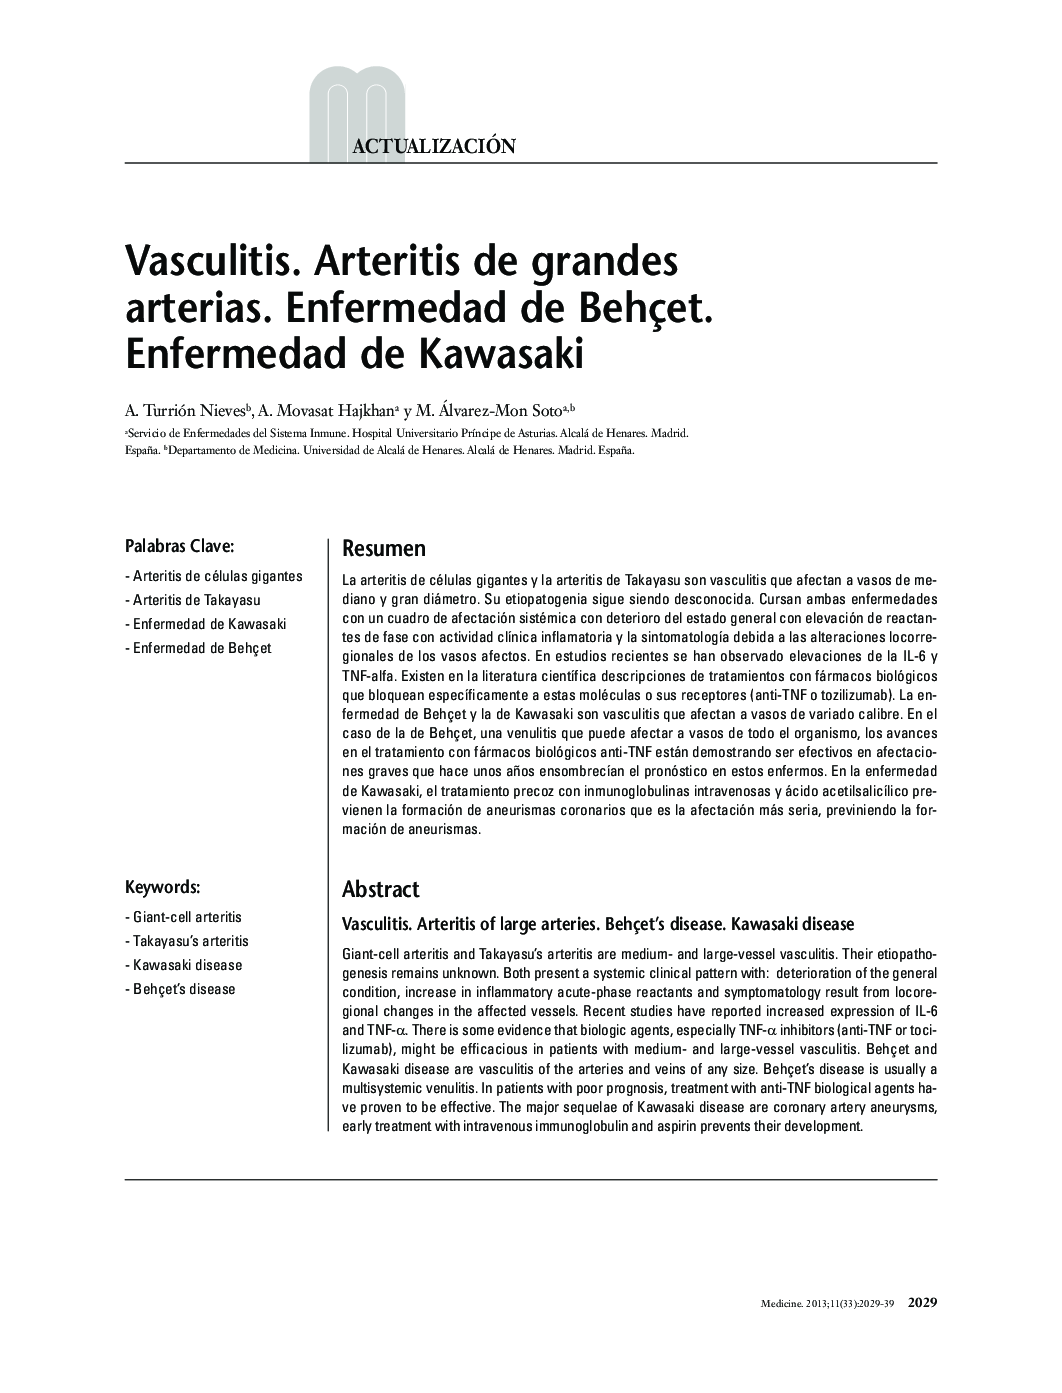 Vasculitis. Arteritis de grandes arterias. Enfermedad de Behçet. Enfermedad de Kawasaki